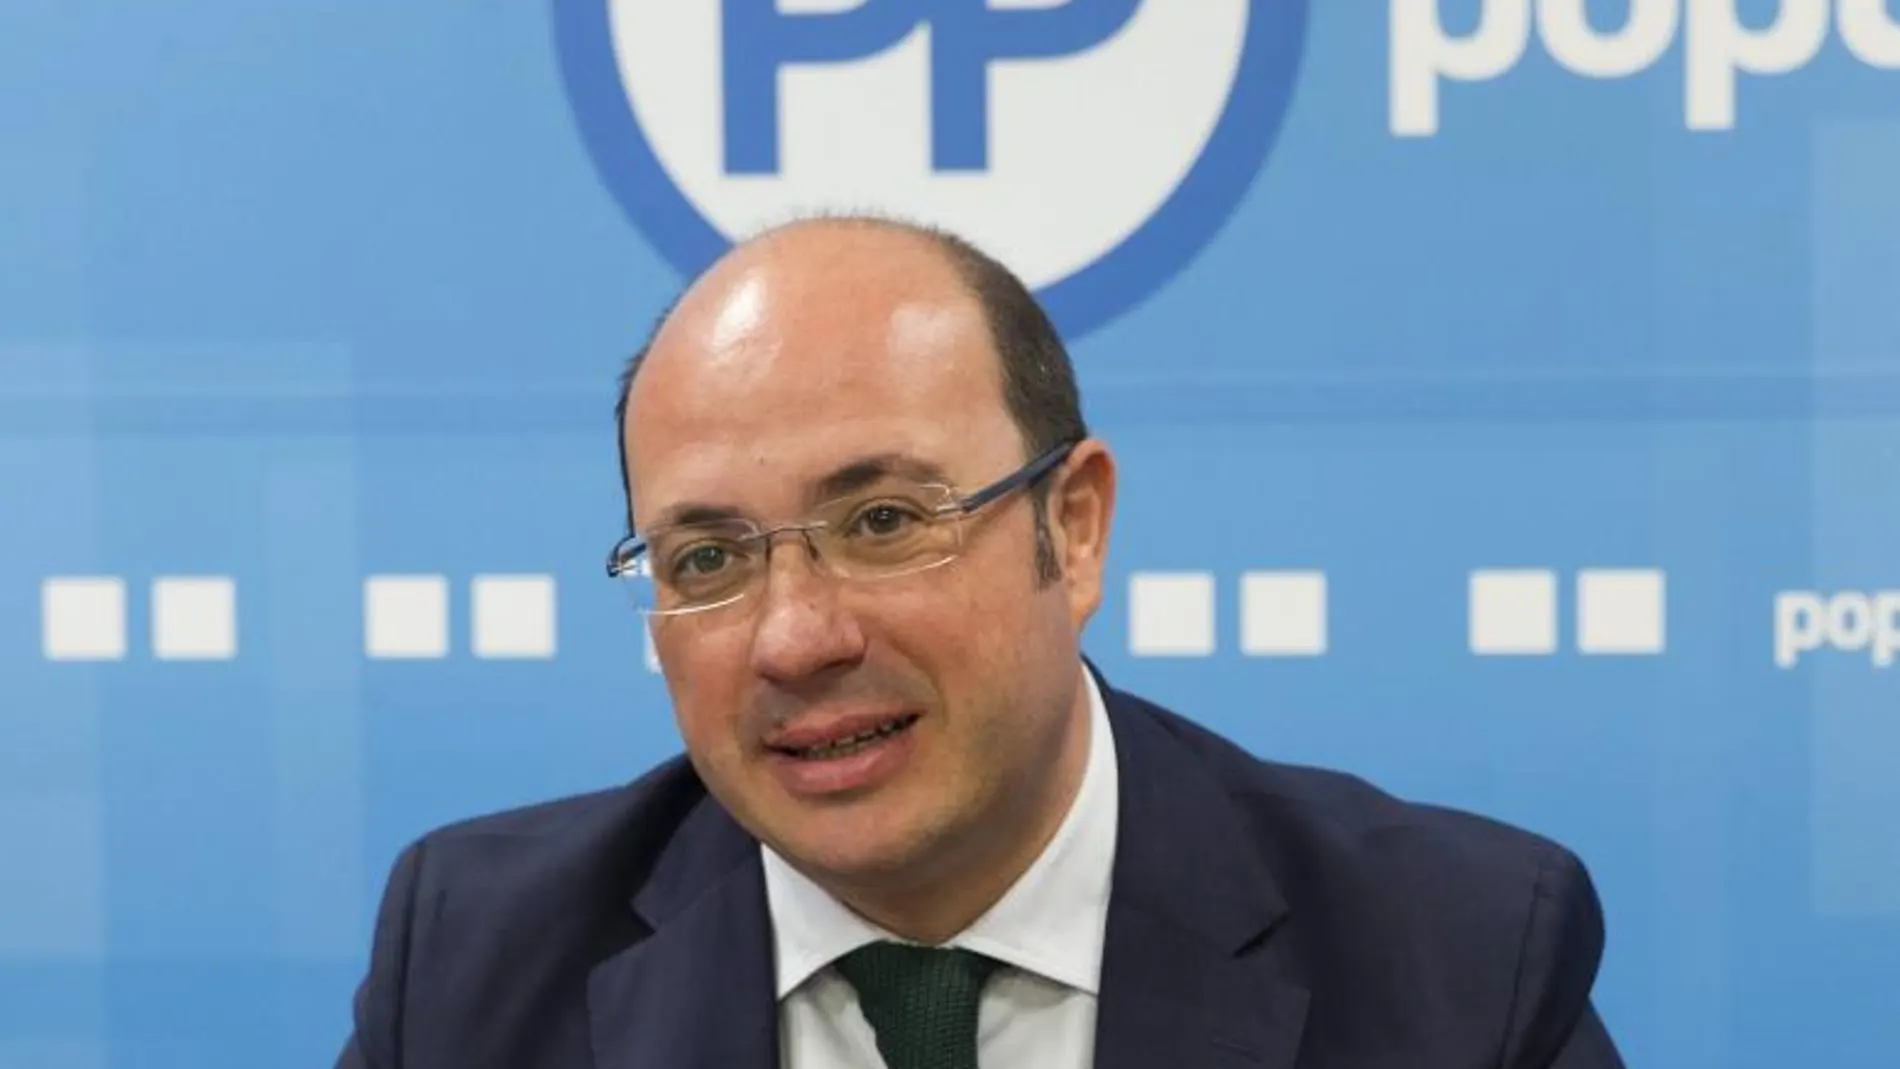 El presidente de la Región de Murcia, Pedro Antonio Sánchez, durante la reunión del comité ejecutivo del PP en la sede del partido en Murcia